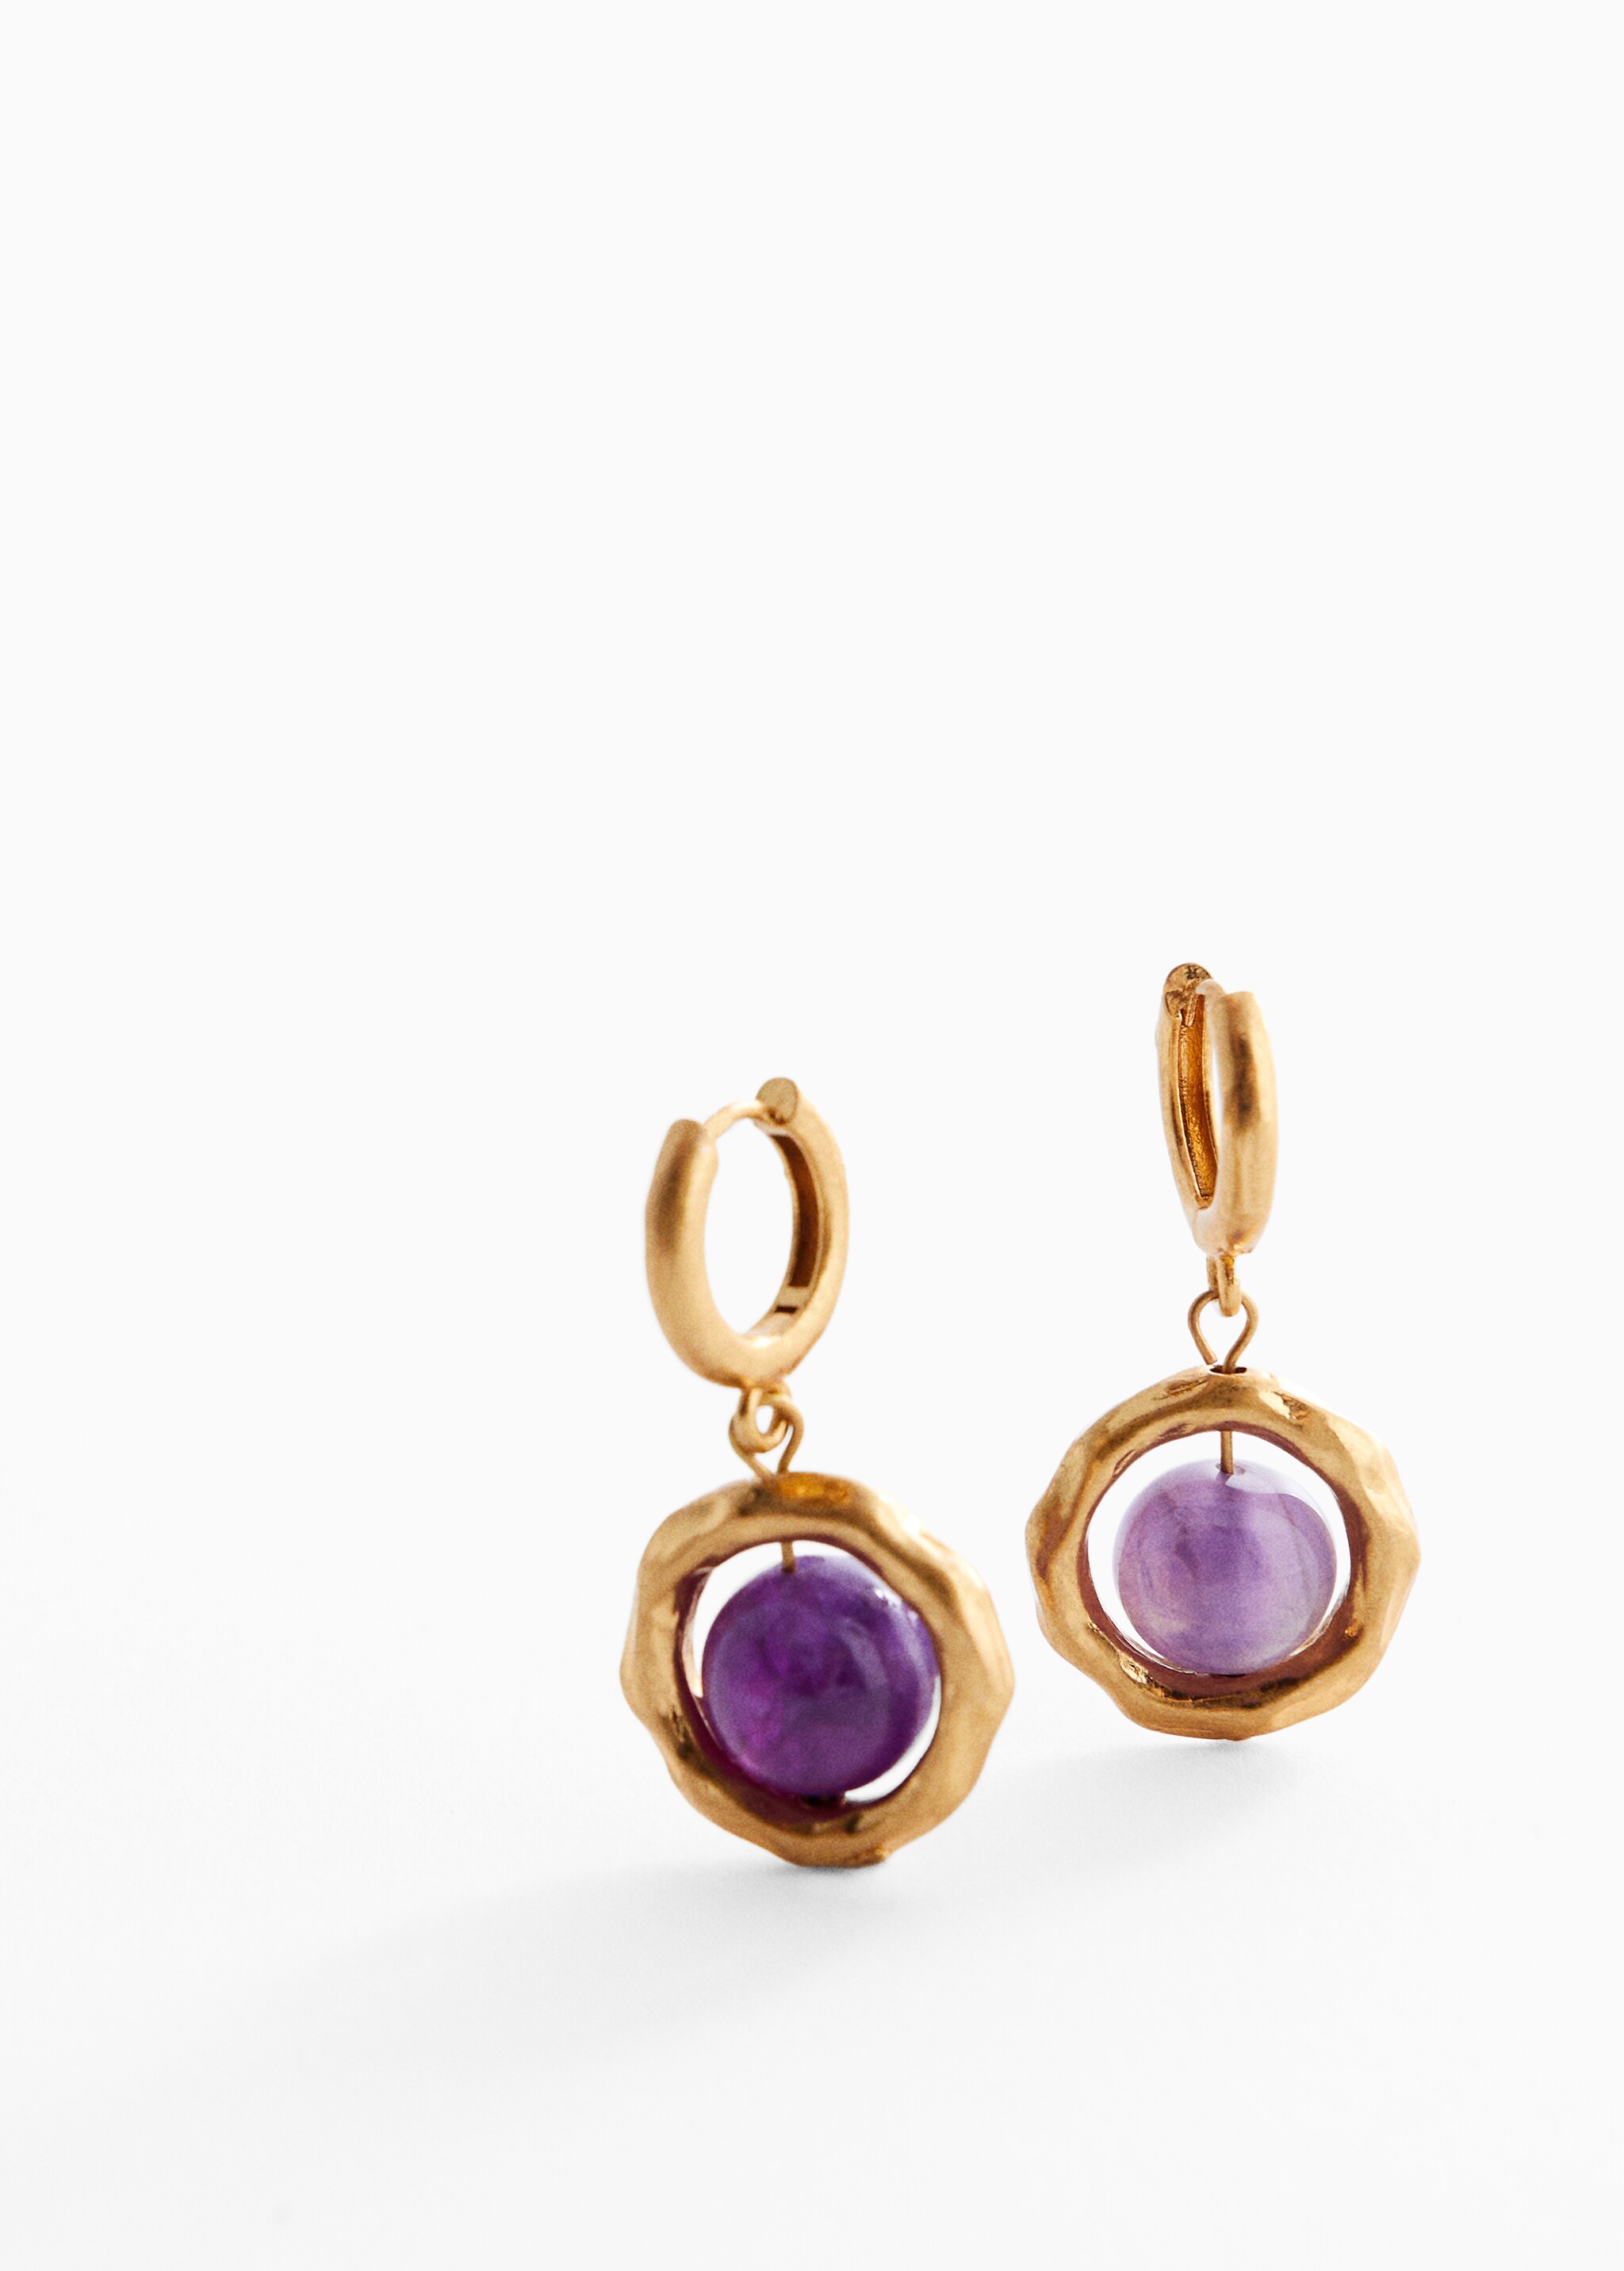 Semi-precious stones earrings - Medium plane